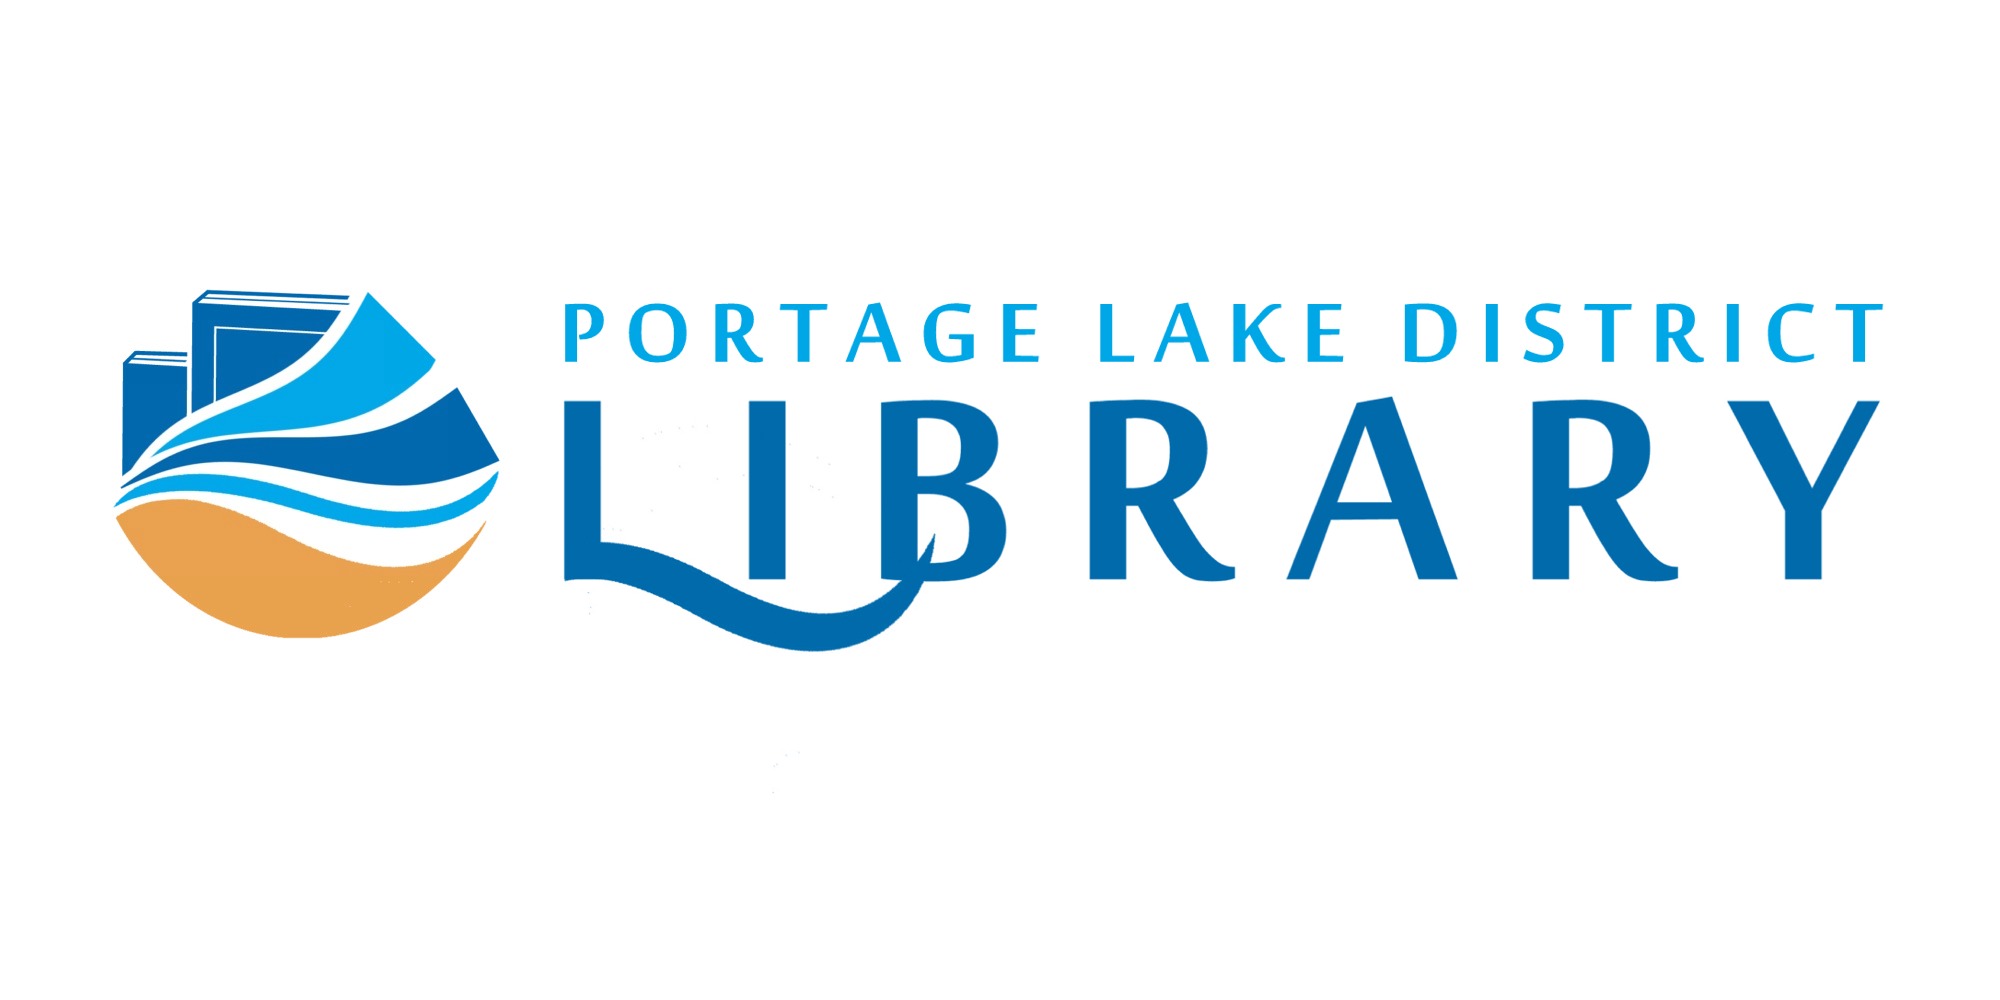 Portage Lake District Library